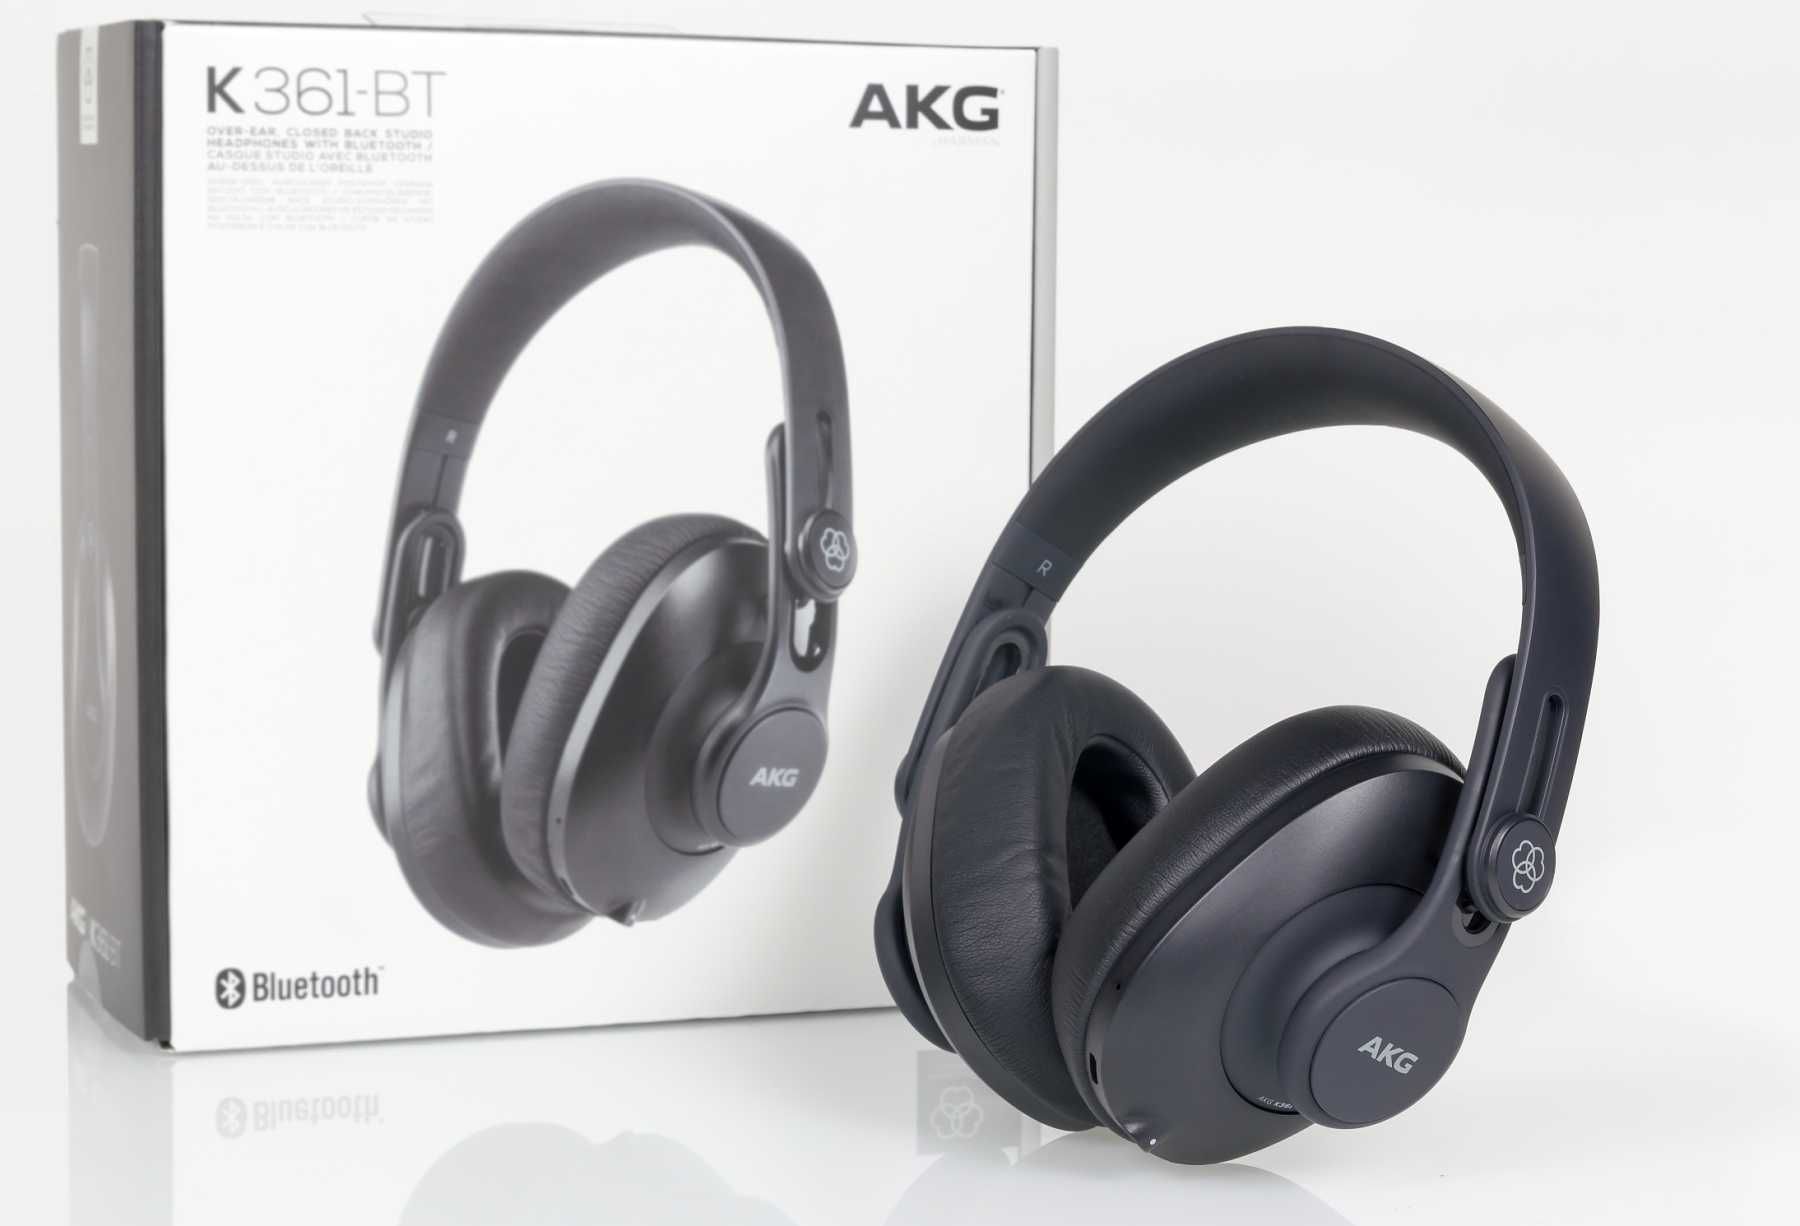 Профессиональные студийные наушники AKG Pro Audio K361-BT